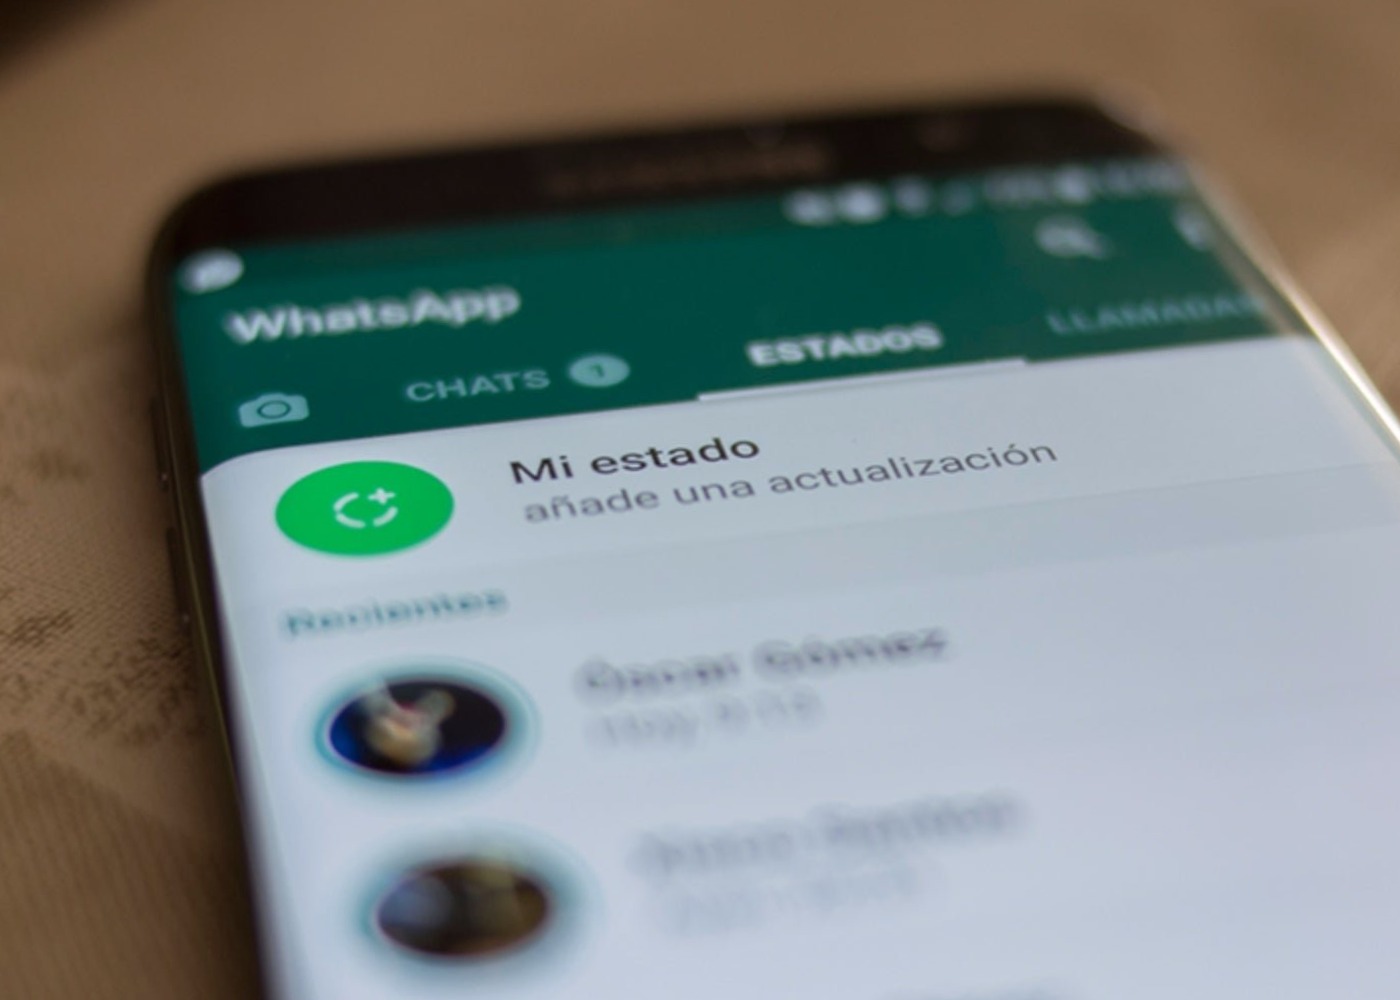 Sacar rendimiento a las estados de whatsapp